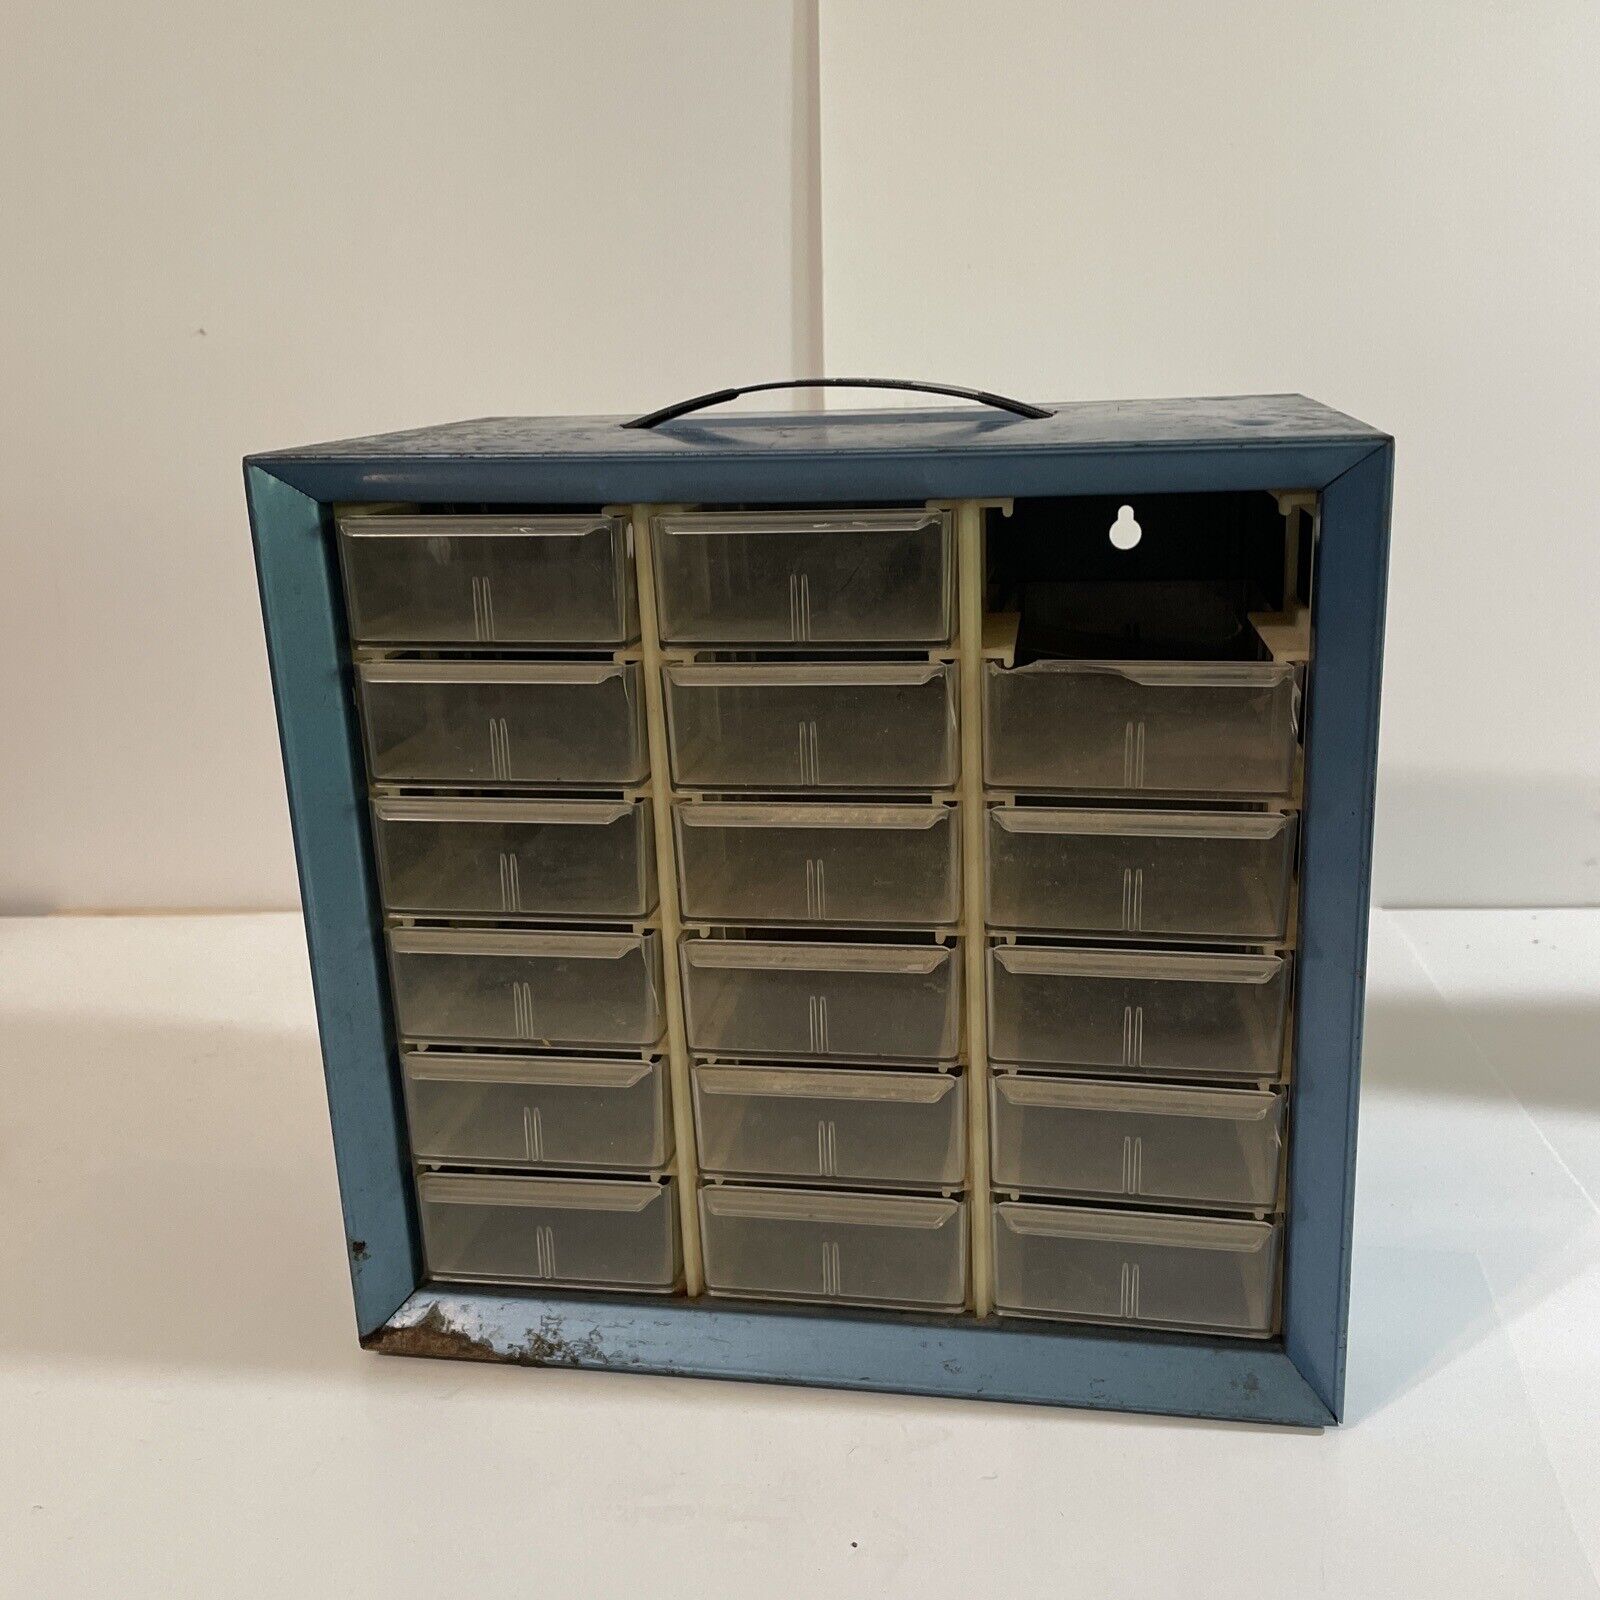 Vintage akro mils storage cabinet Parts Drawer Organizer 9.5x10x6 18 Drawer